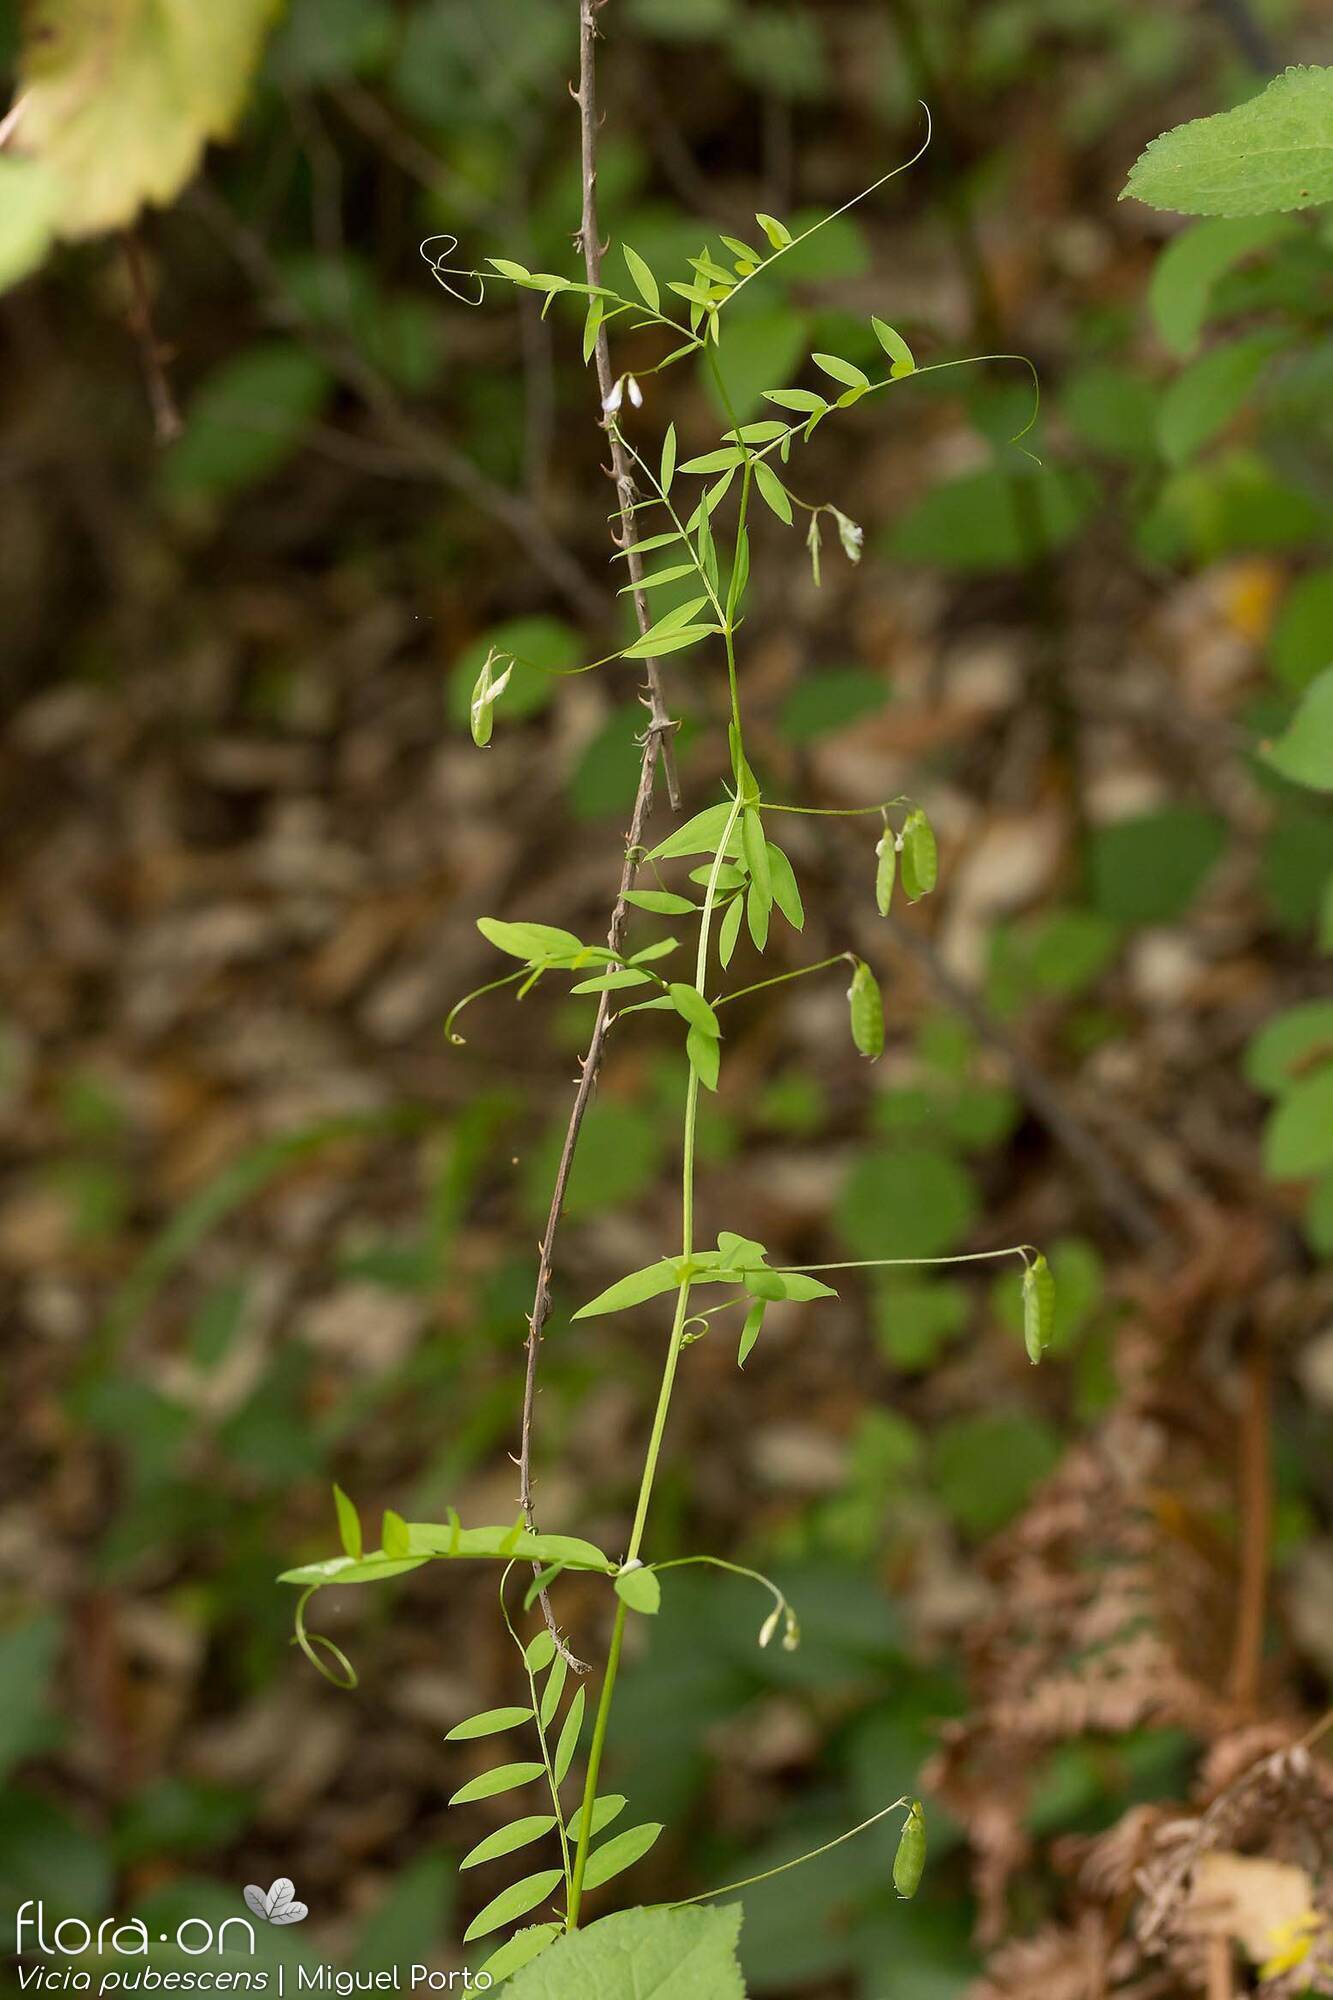 Vicia pubescens - Hábito | Miguel Porto; CC BY-NC 4.0